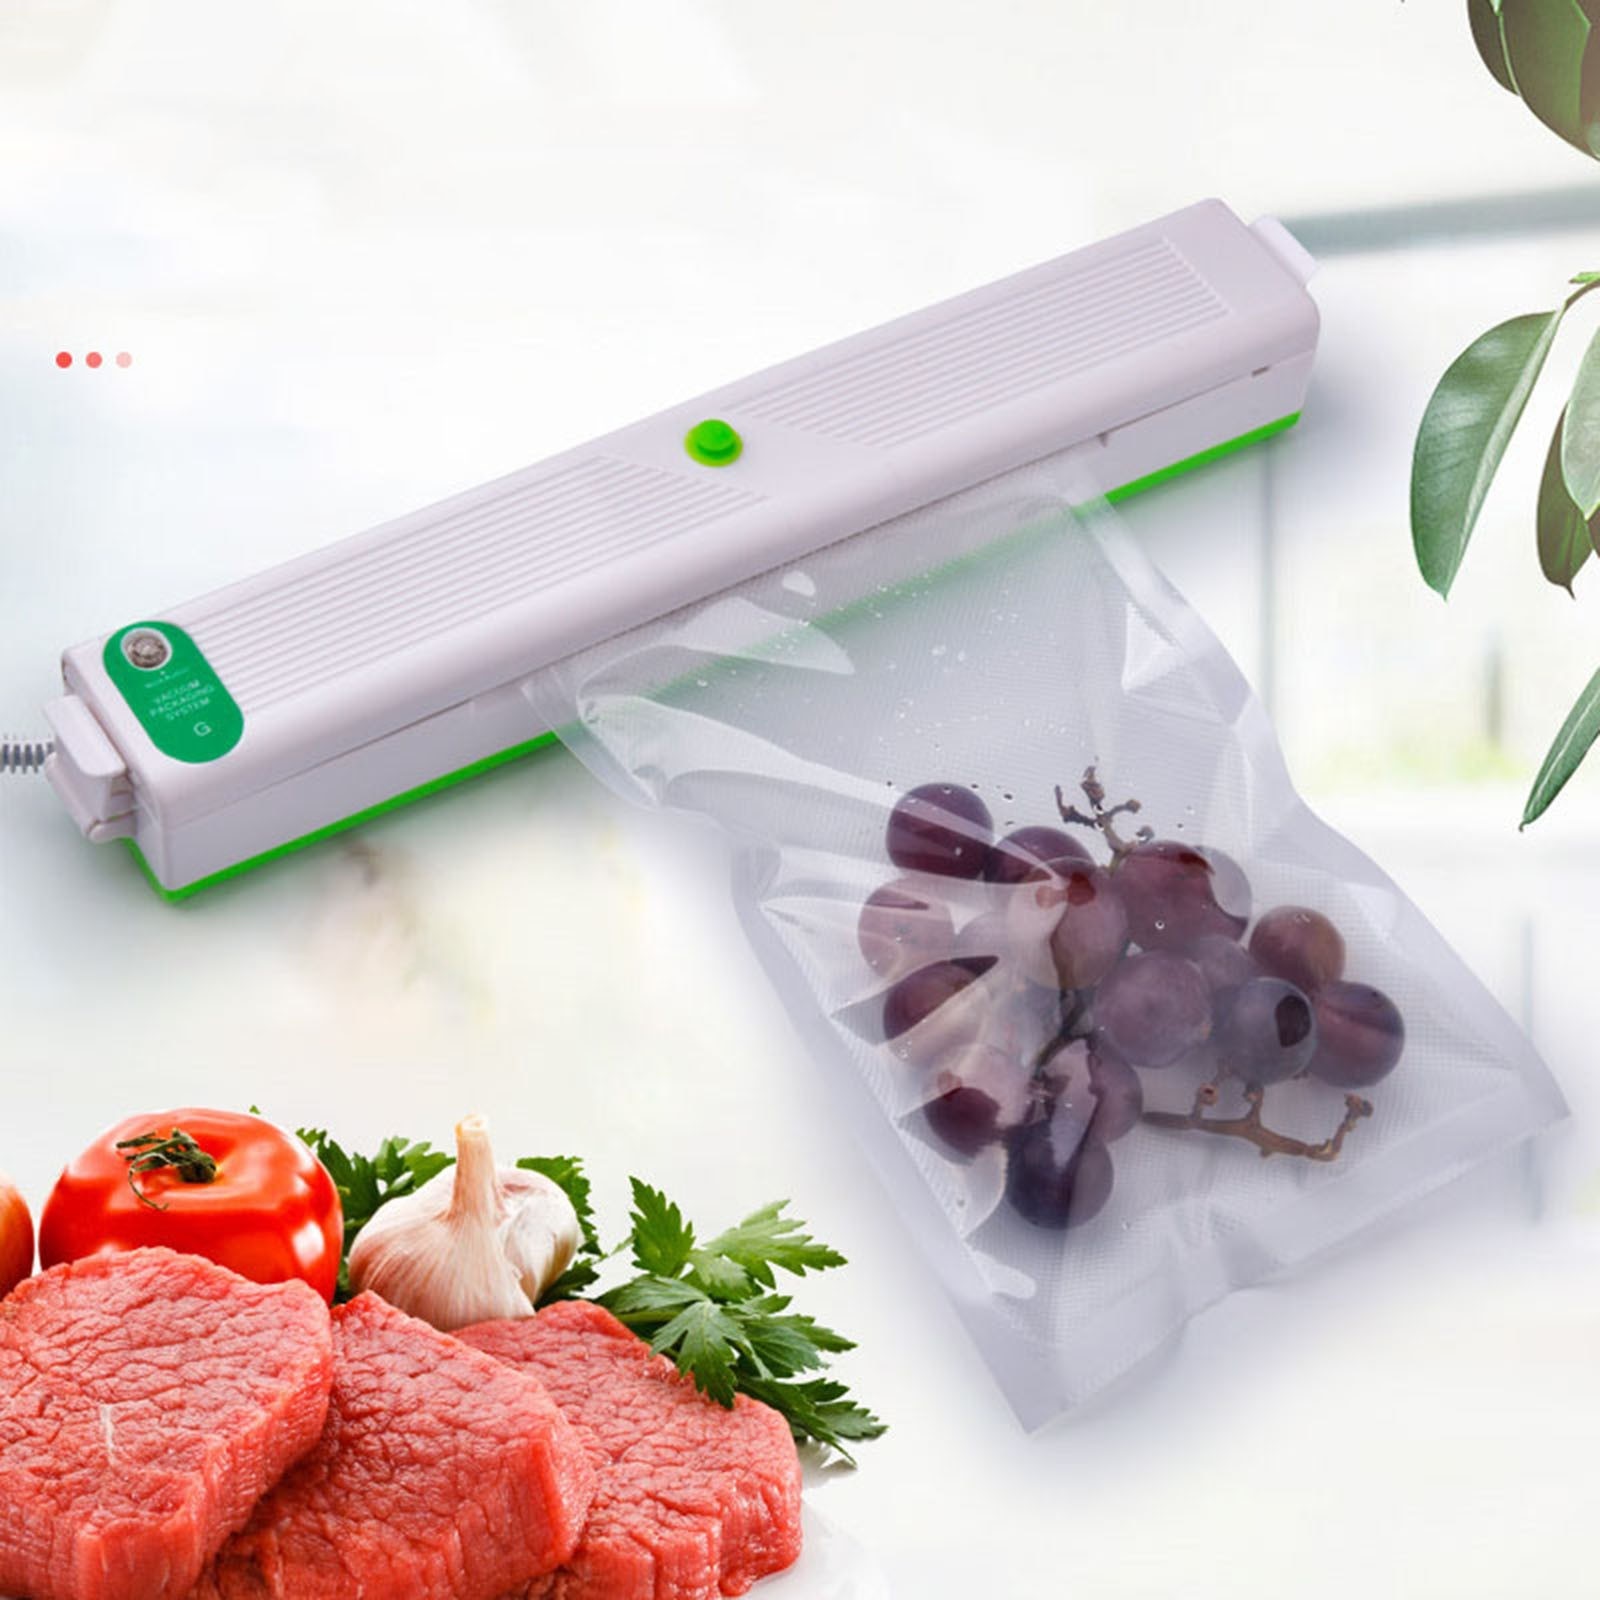 Vacuüm Voedsel Sealer Automatische Huishoudelijke Vacuum Sealer Verpakking Machine Voor Voedsel Spaarders Starter Droog Vochtig Voedsel Modes # Db4